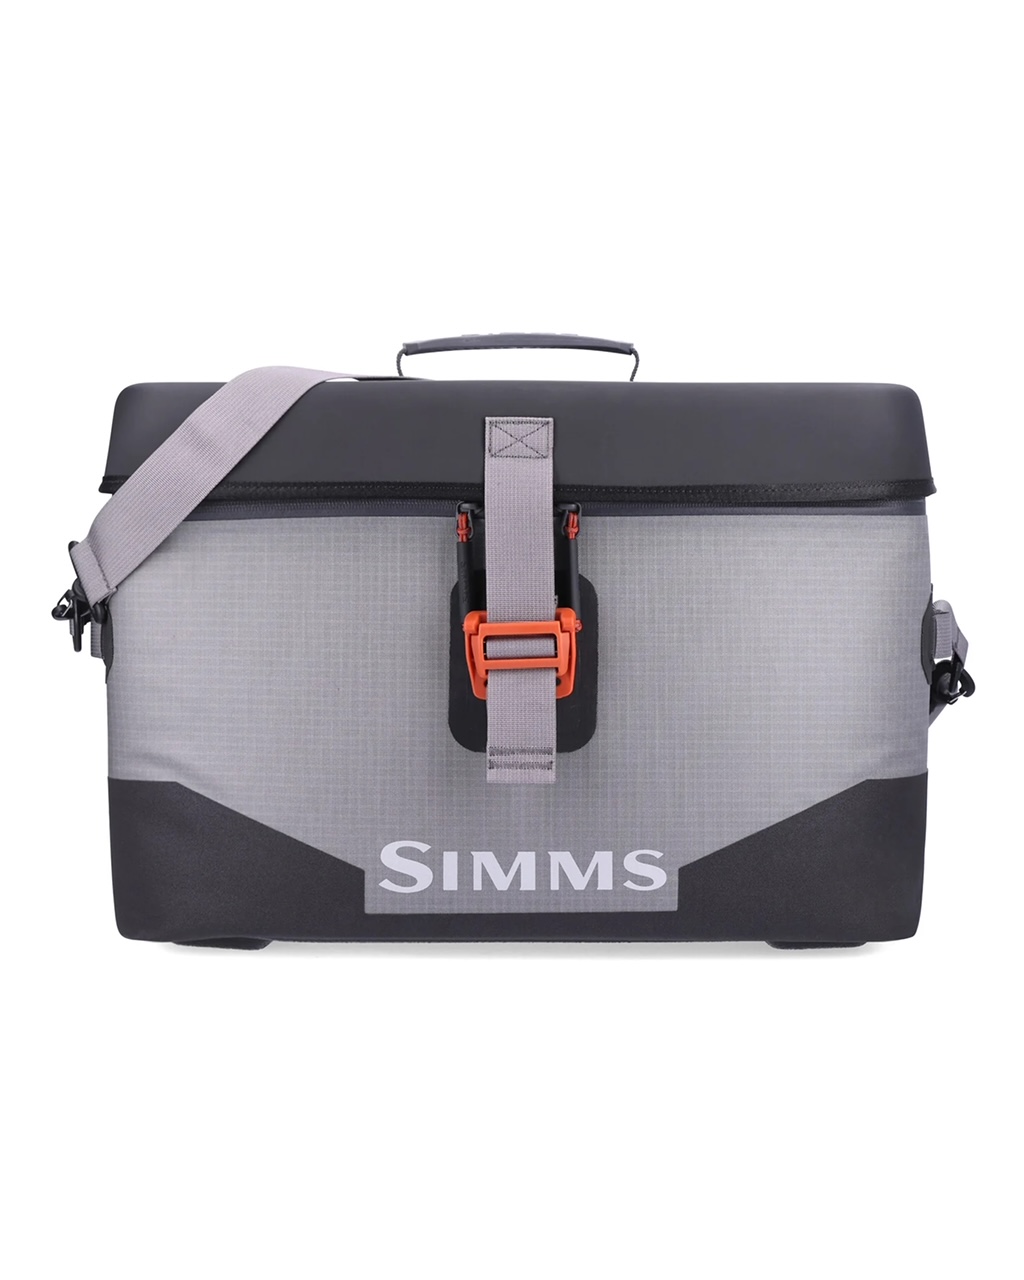 Simms Dry Creek Boat Bag - Large (25L)